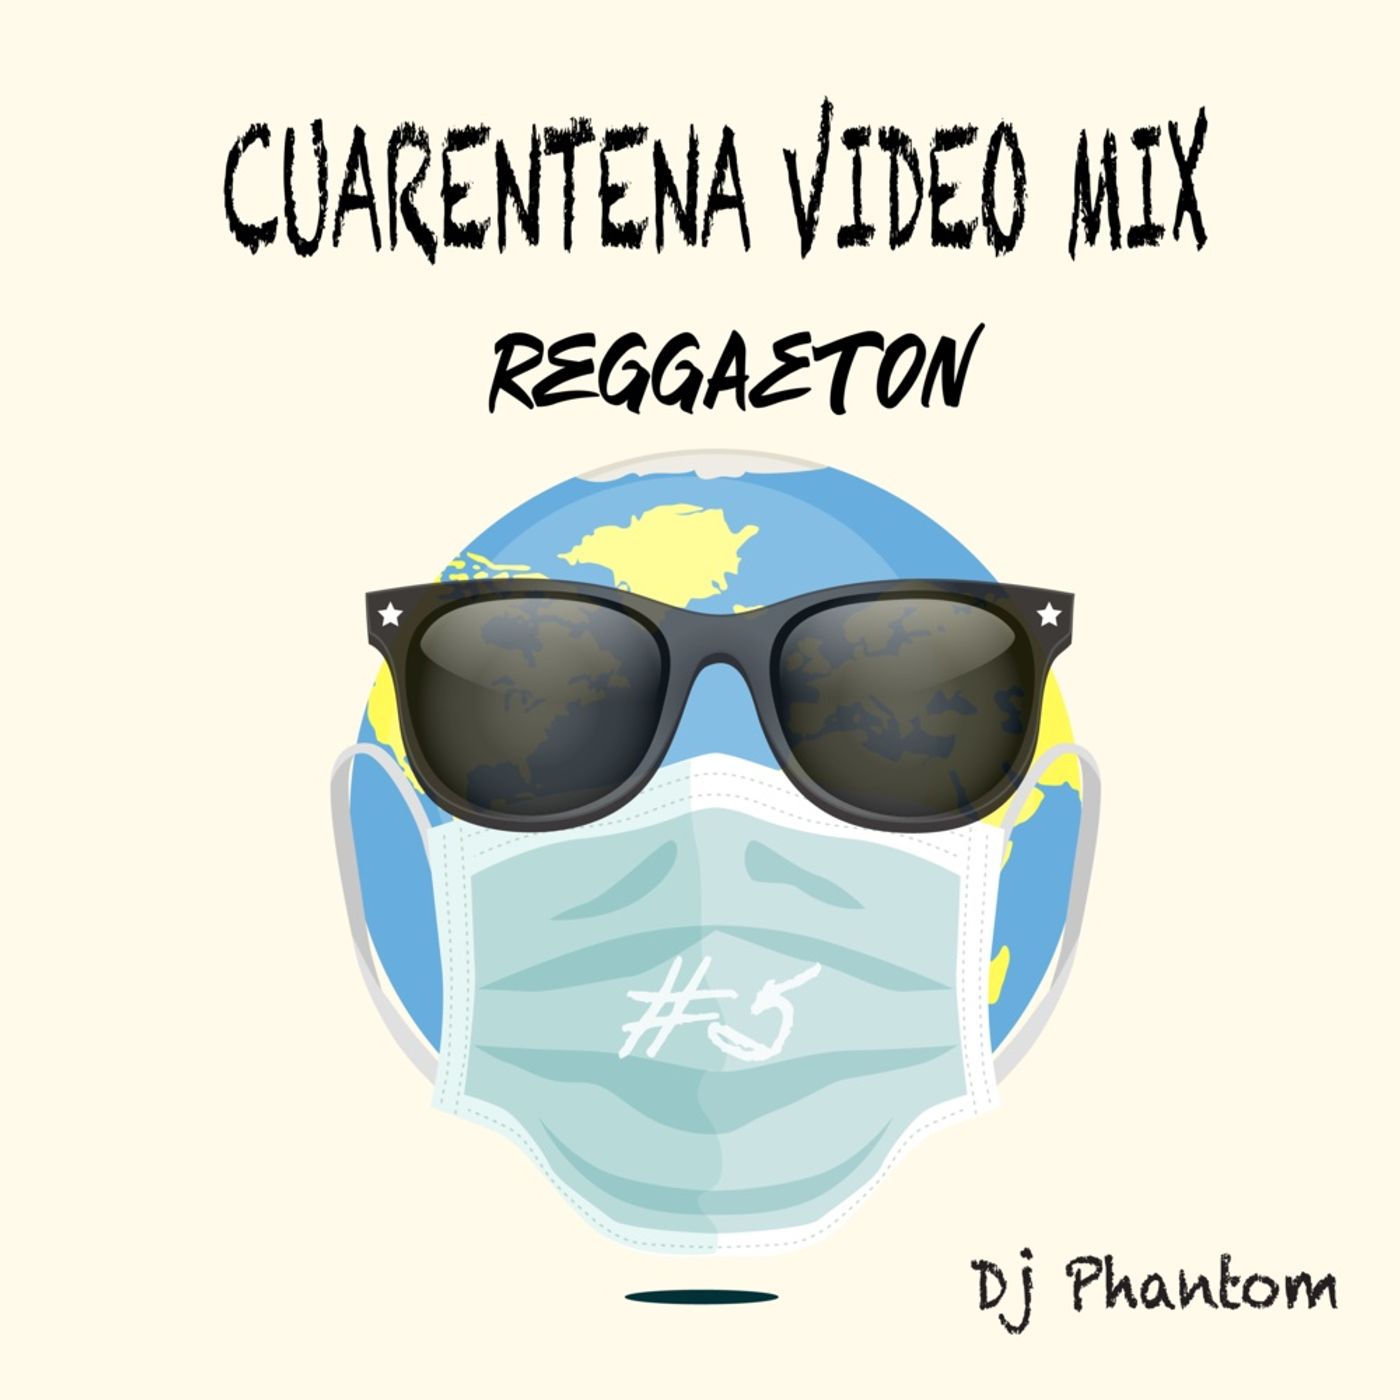 Cuarentena Mini Mix Reggaeton #5